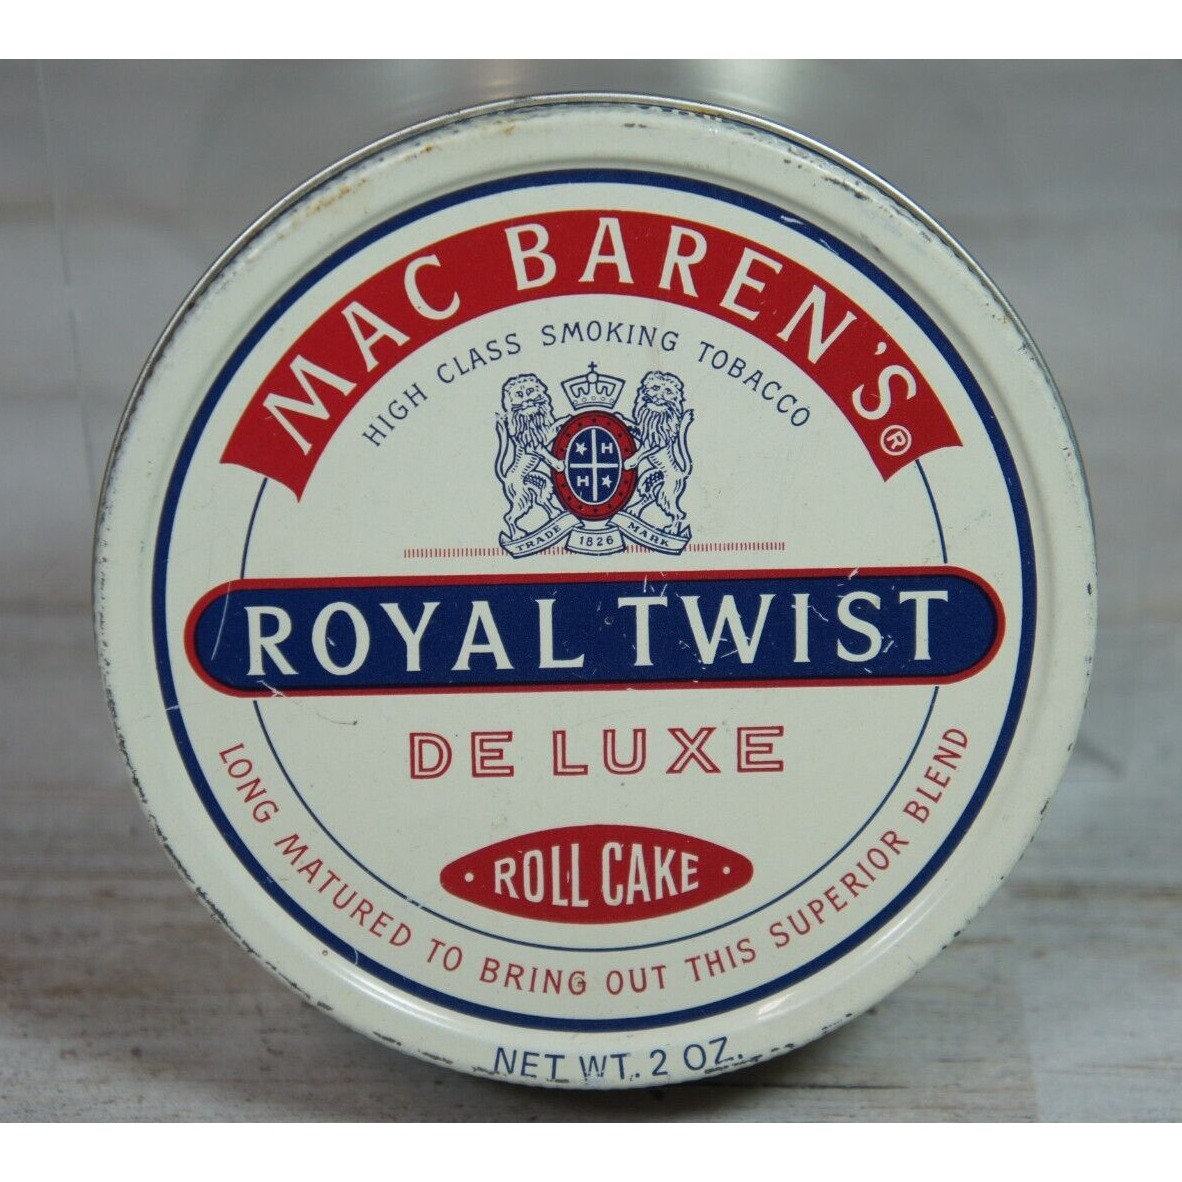 Royal Twist 3.5oz - Mac Baren Pipe Tobacco